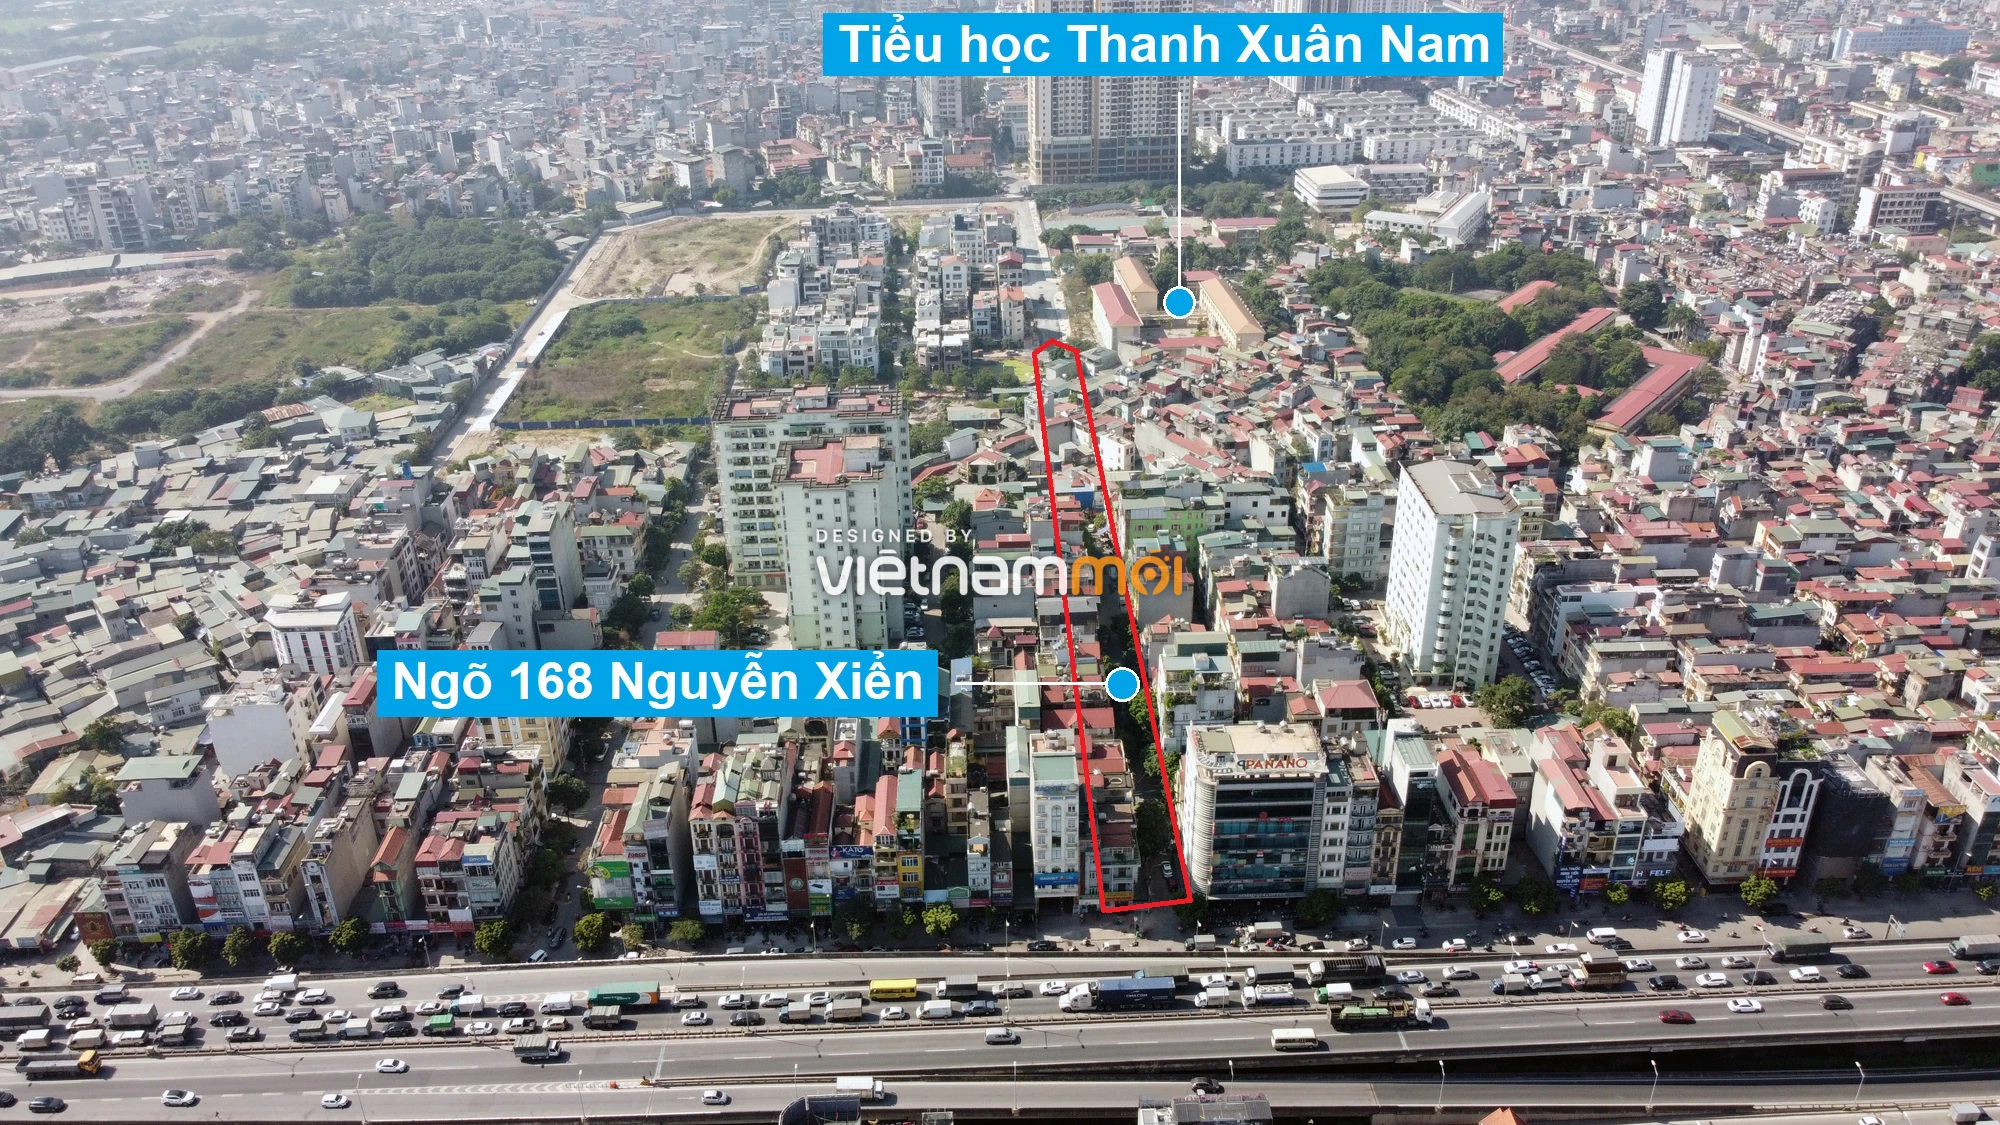 Những khu đất sắp thu hồi để mở đường ở quận Thanh Xuân, Hà Nội (phần 2) - Ảnh 9.